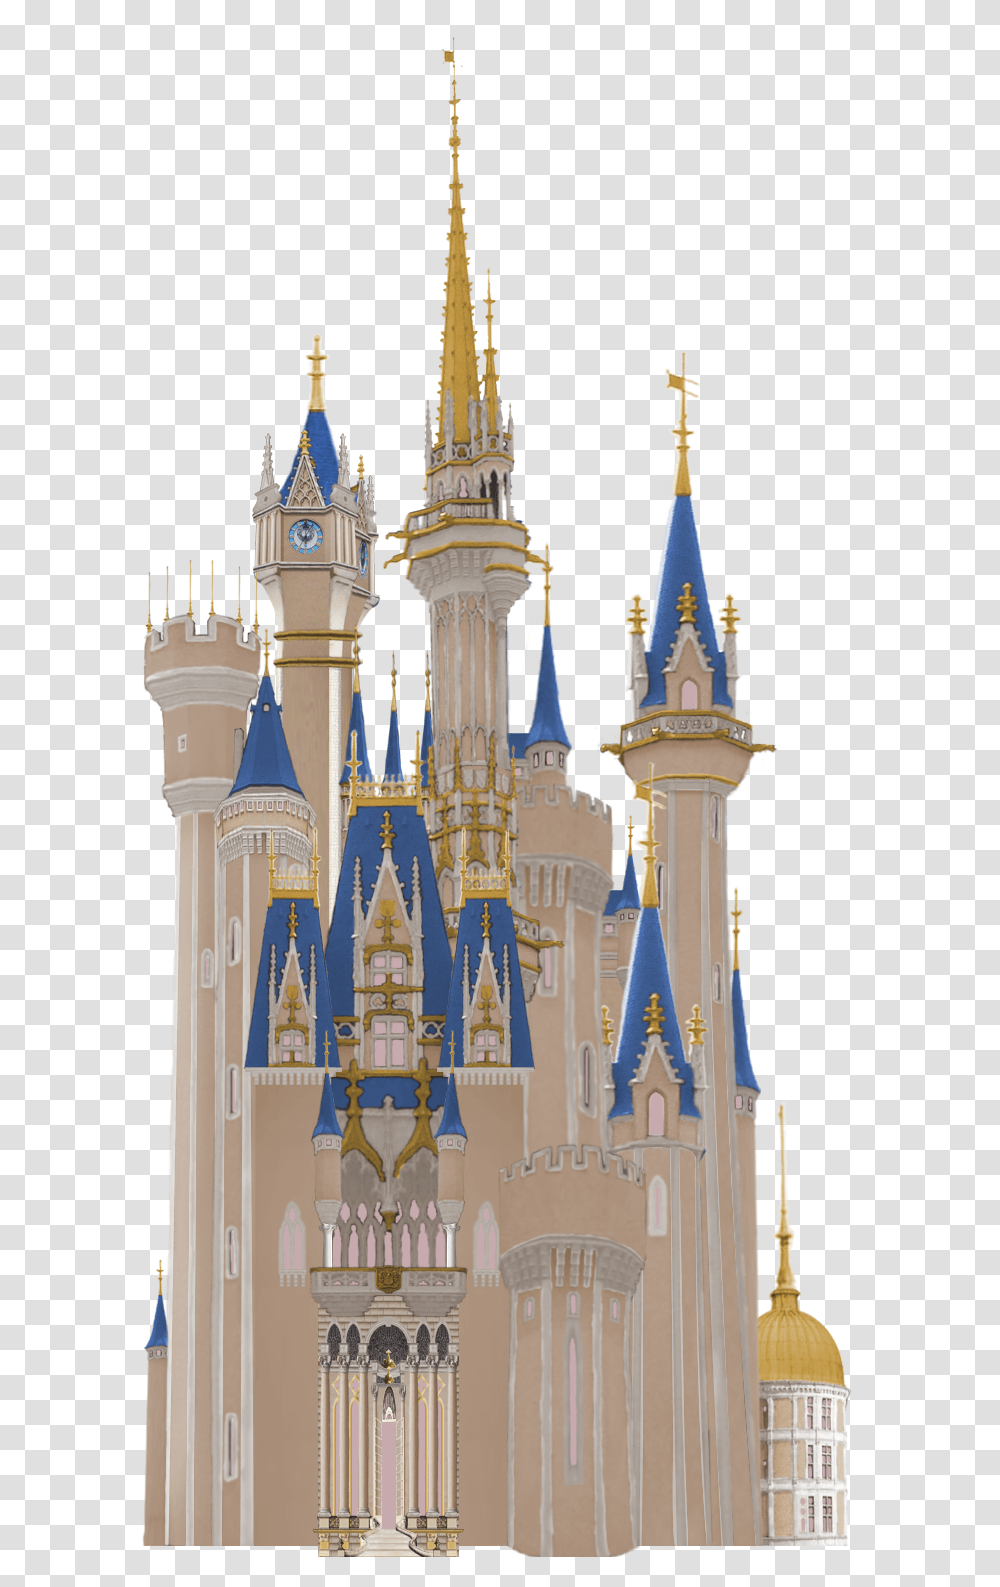 Kingdom Hearts Cinderella Castle Kingdom Hearts Disney Castle, Architecture, Building, Theme Park, Amusement Park Transparent Png